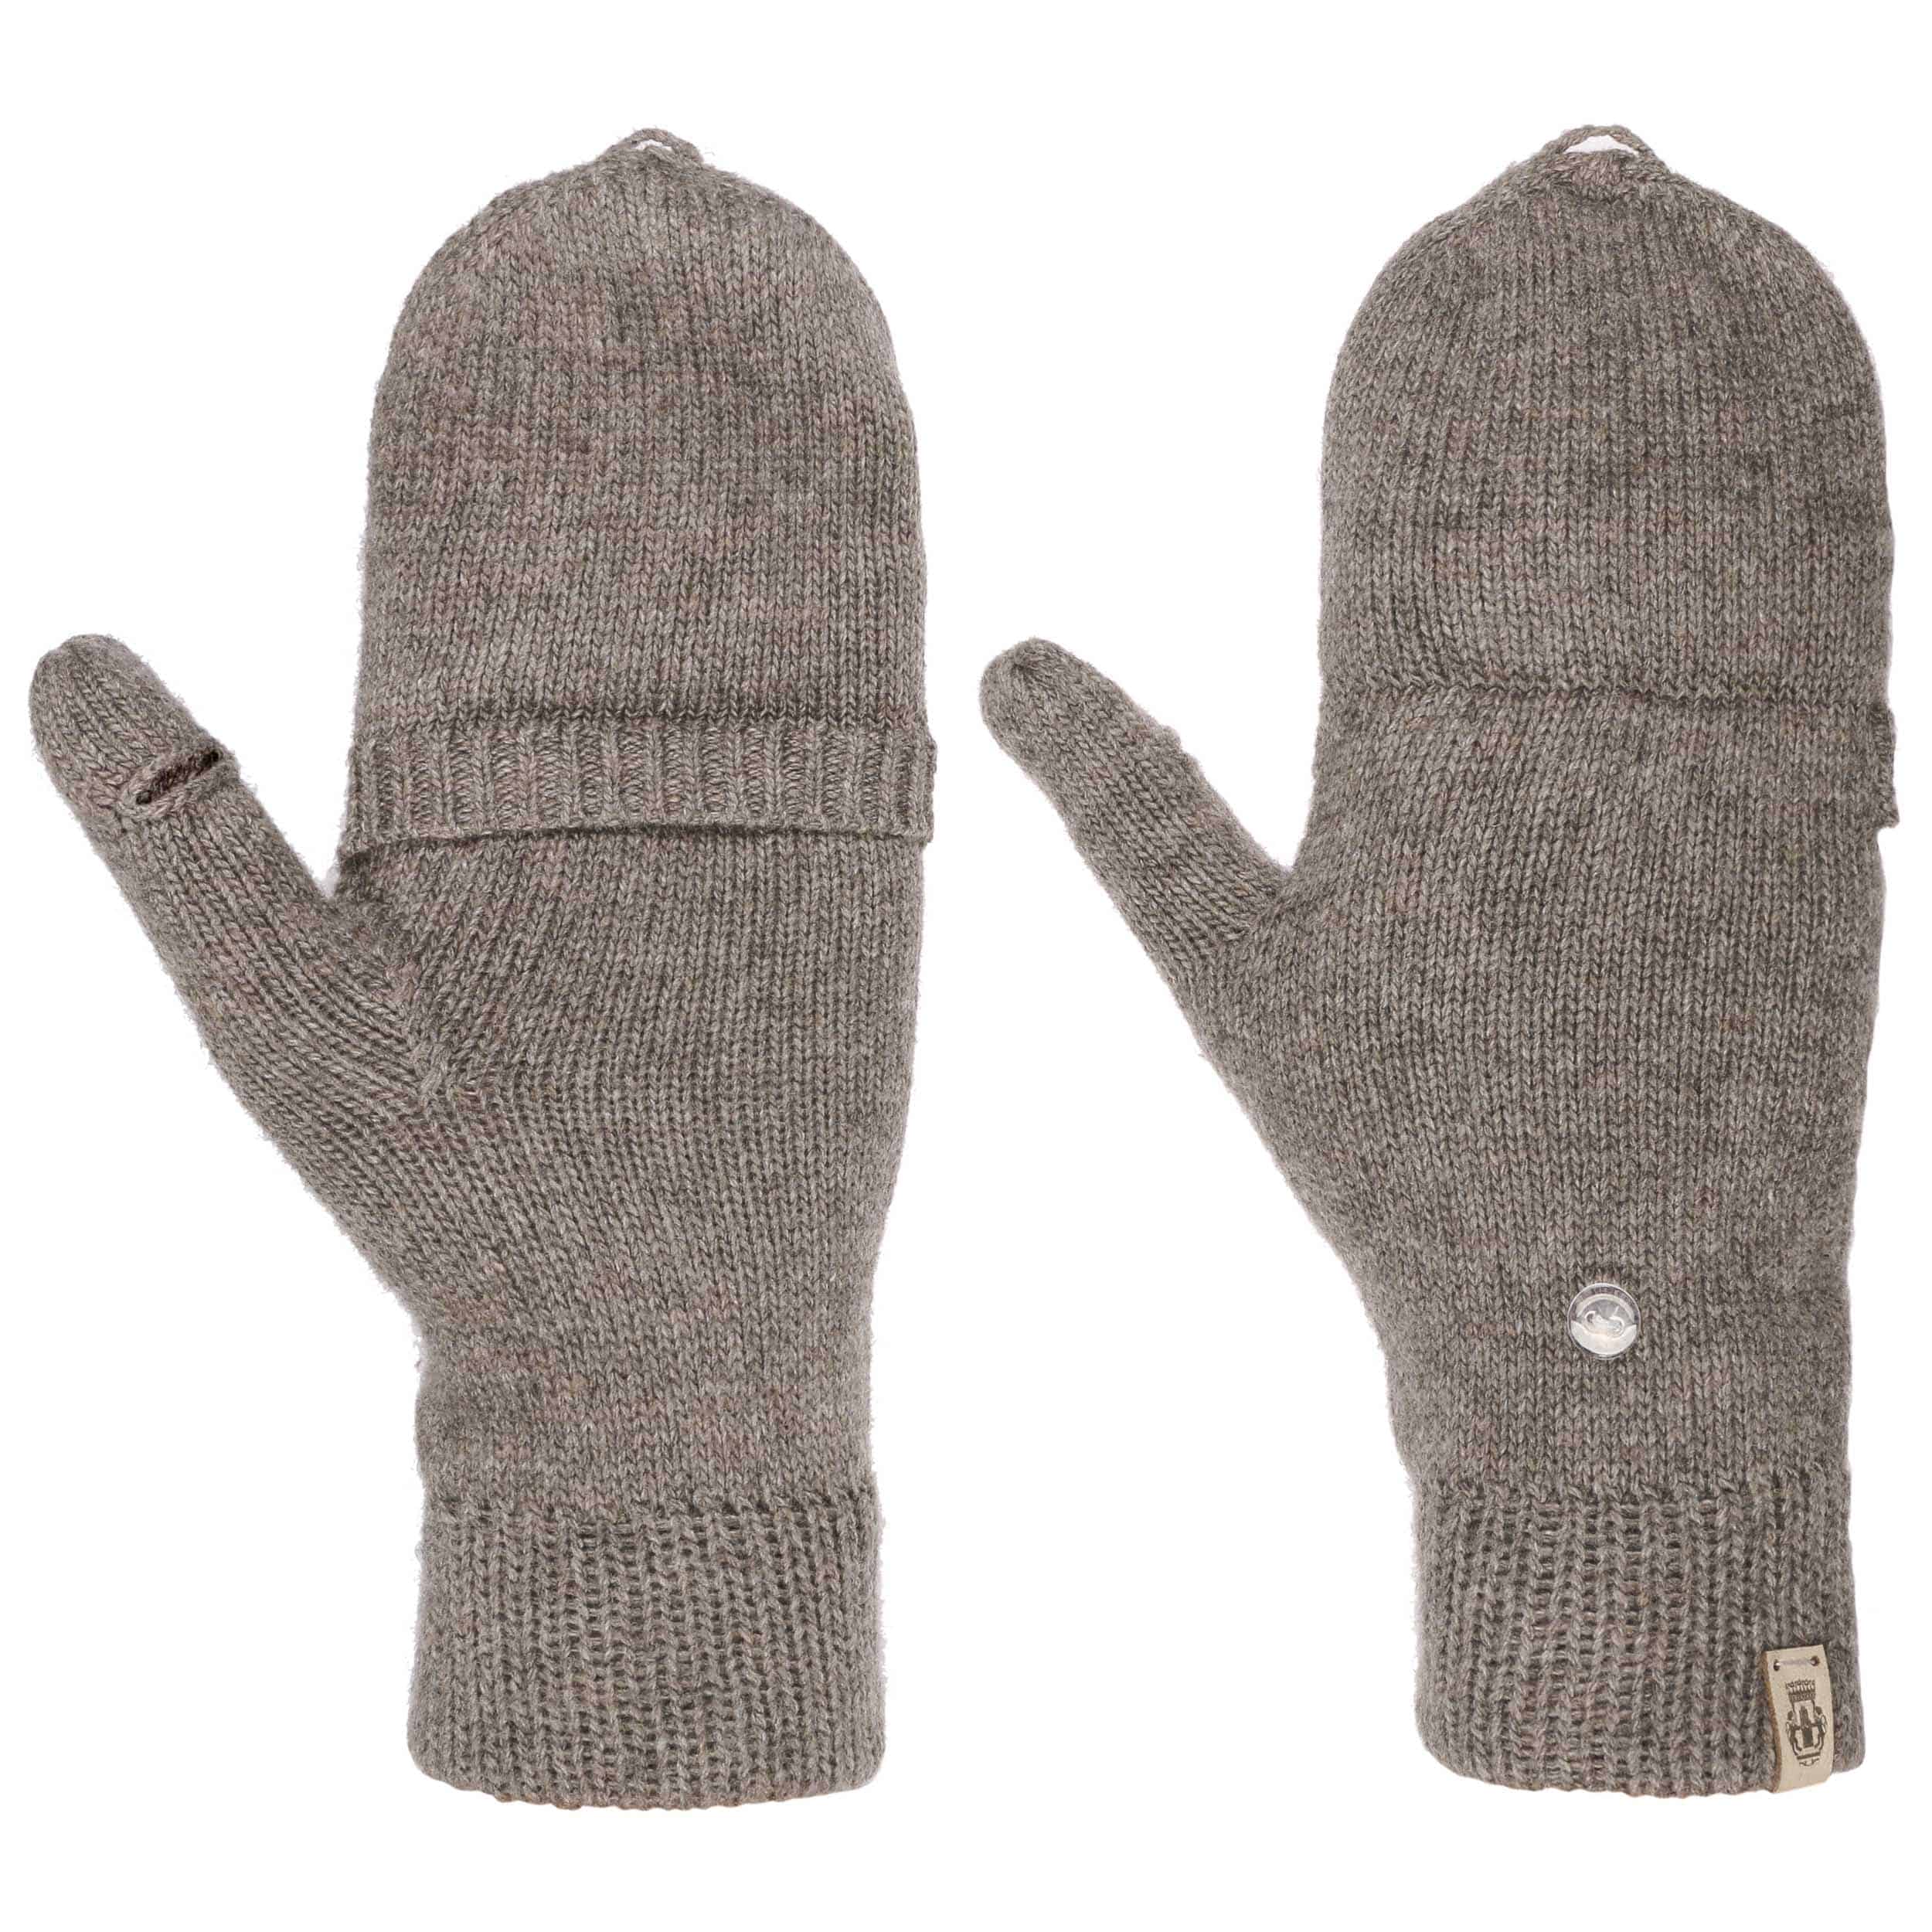 armwarmers Accessoires Handschoenen & wanten Winterhandschoenen handwarmers sms-handschoenen Kasjmier vingerloze handschoenen Donkergrijs 